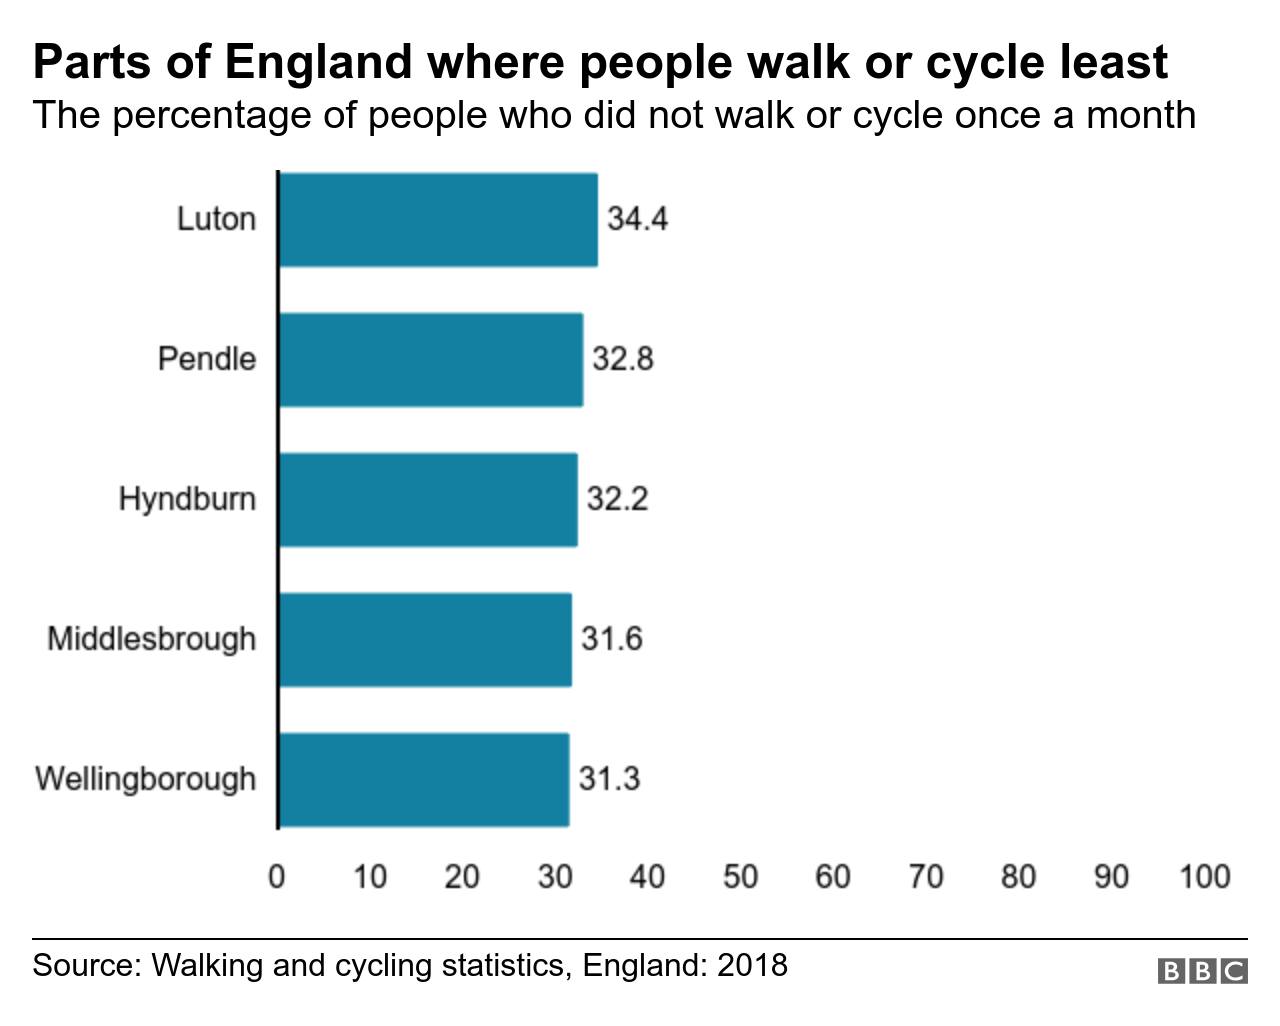 Гистограмма, показывающая районы, где наибольший процент респондентов не ходил / не ездил на велосипеде один раз в месяц